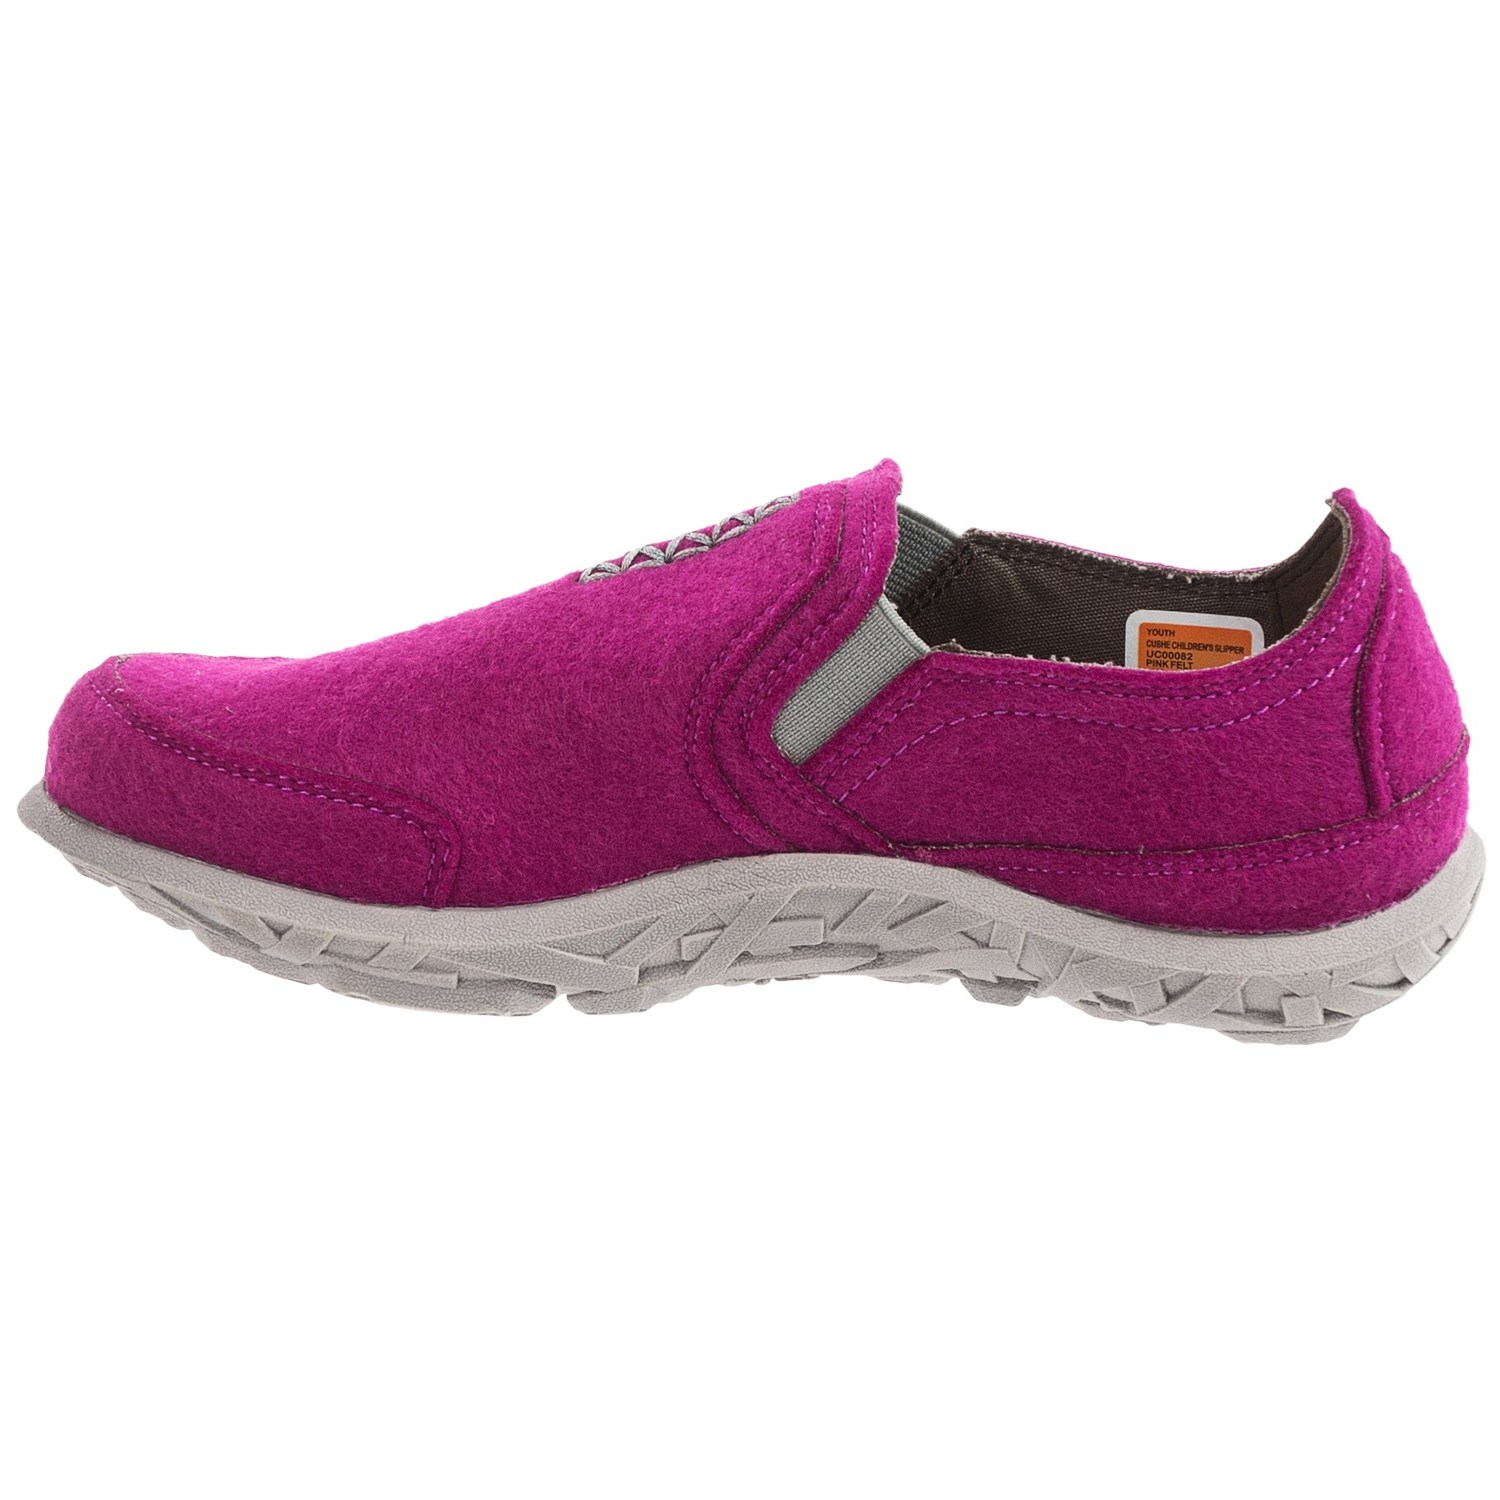 Cushe Slipper Shoes (For Big Kids) 9999A - Save 68%